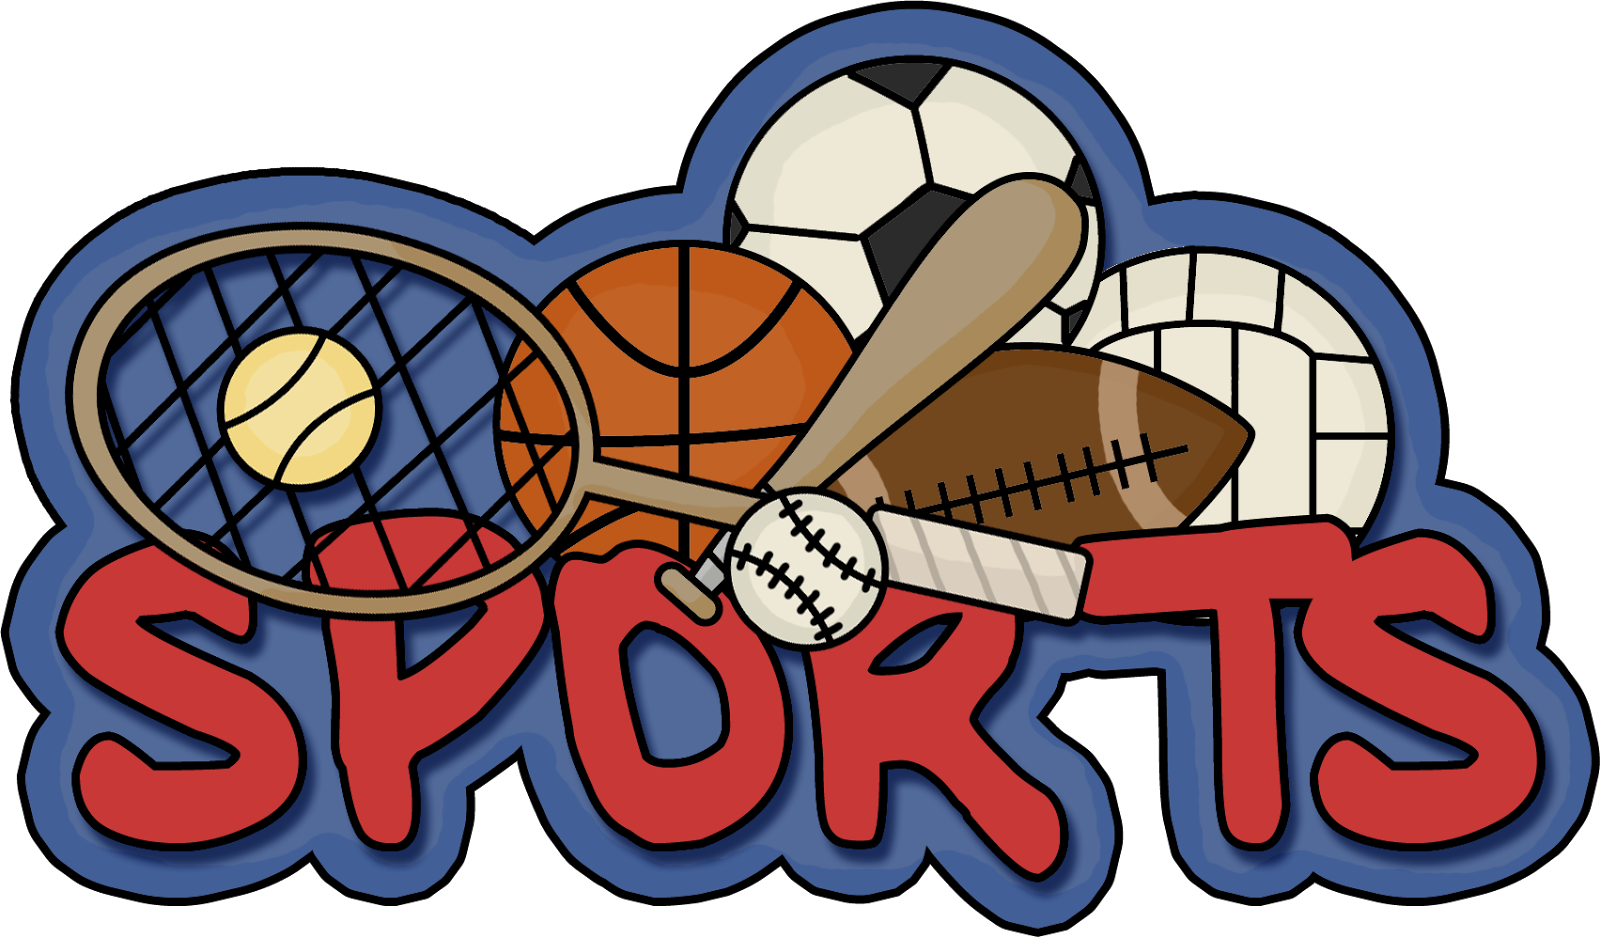 Спортивные логотипы. Эмблемы спортивных товаров. Спорт слово. Спорт надпись. Sports and games we